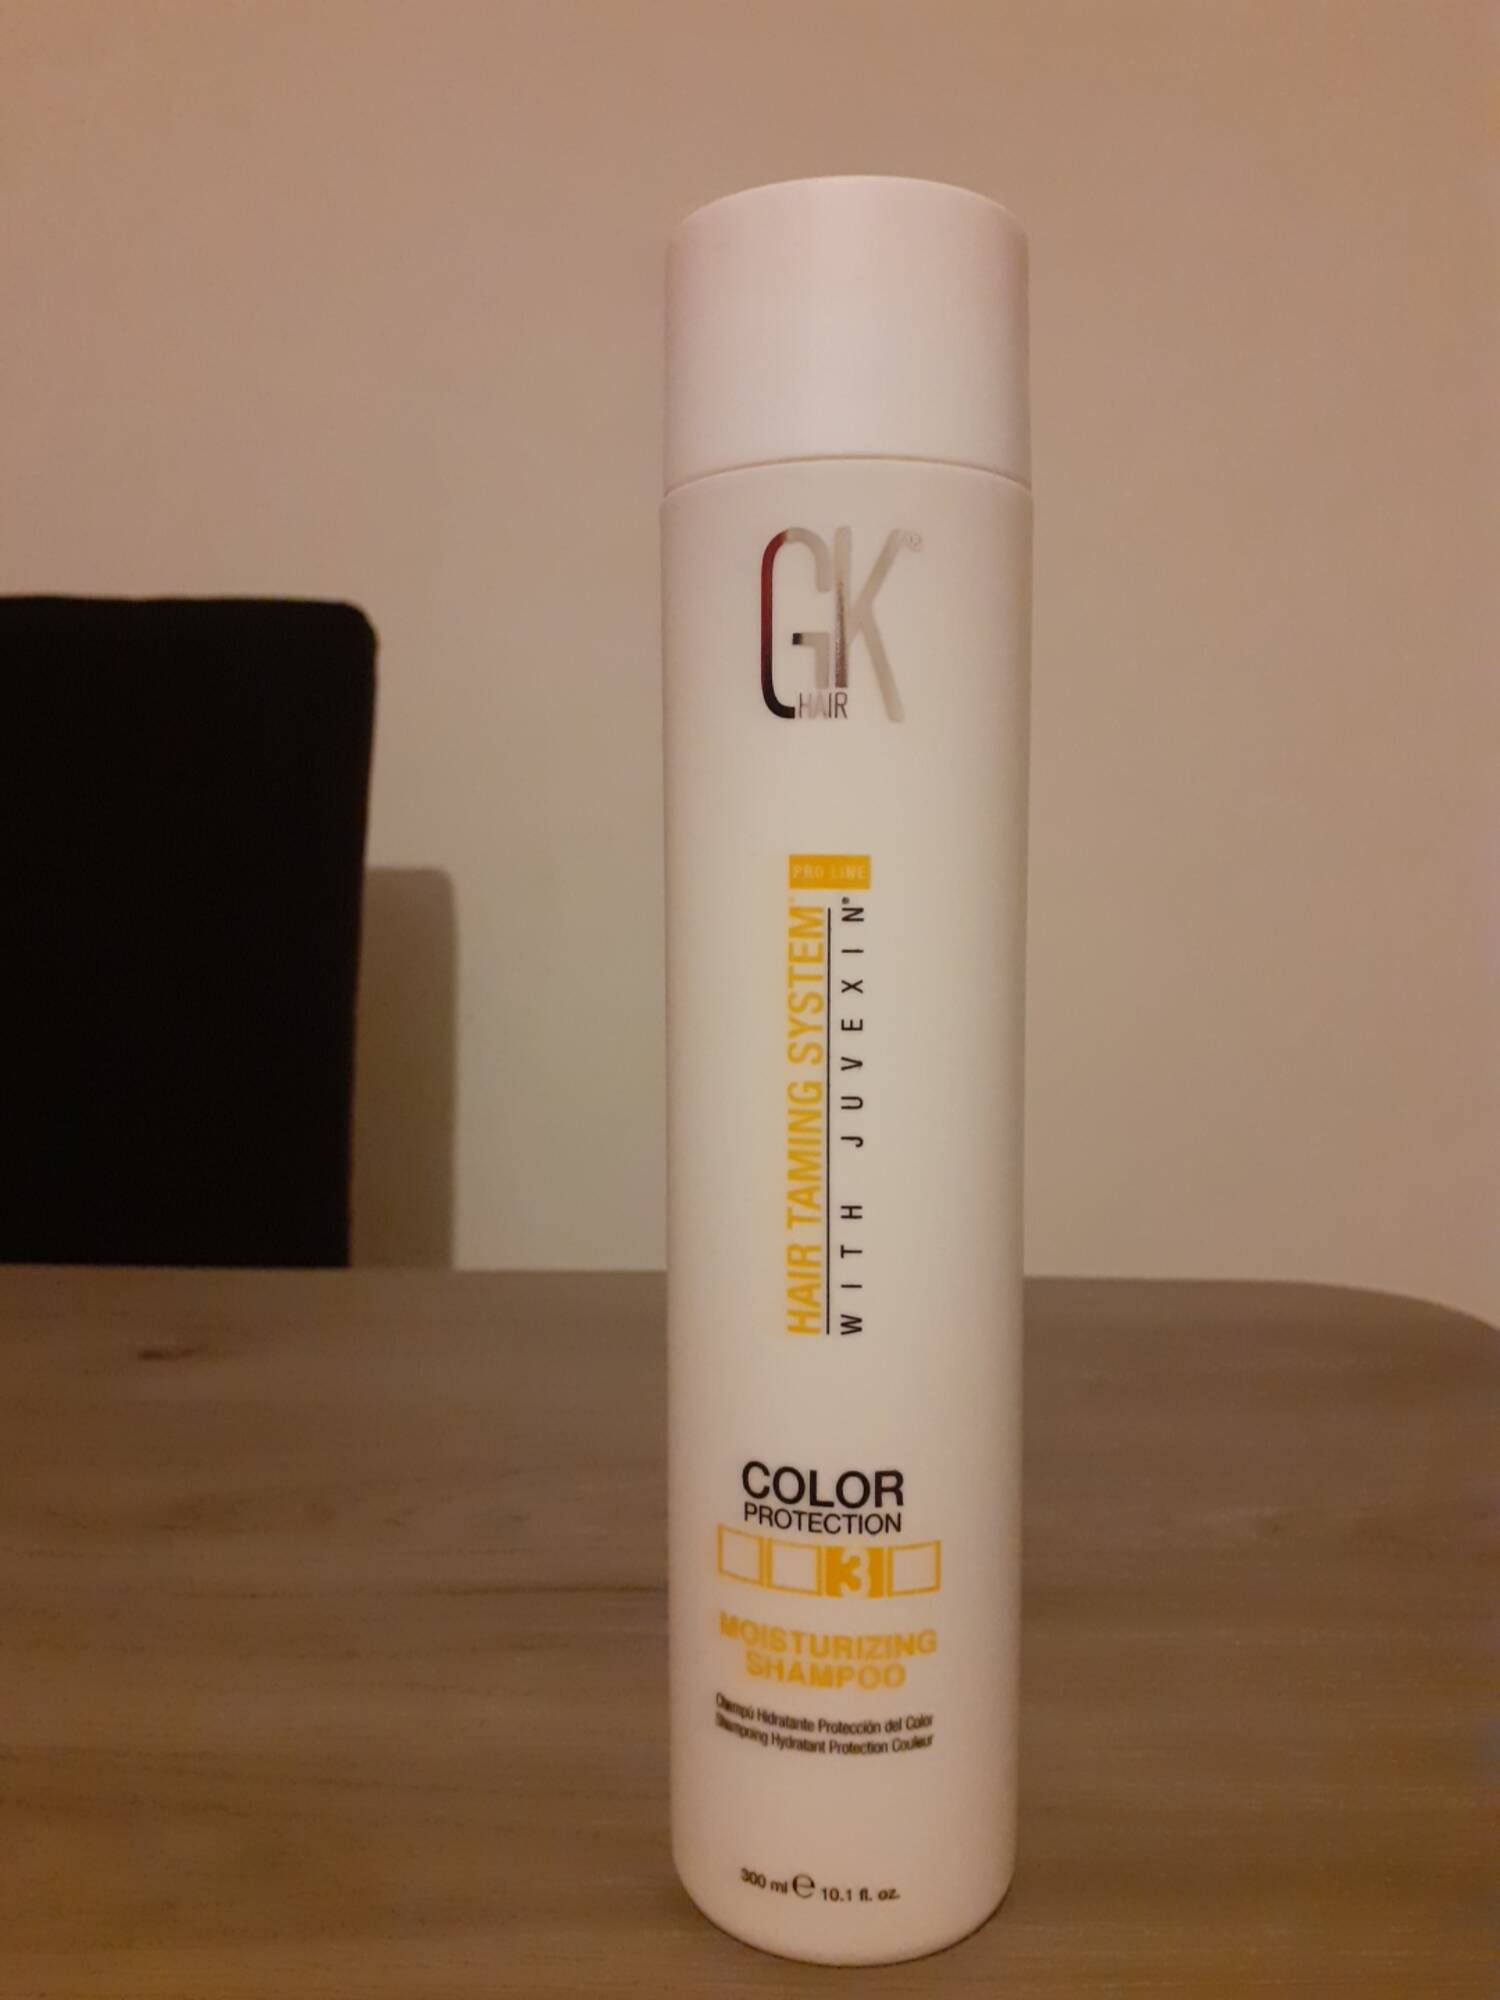 GKHAIR - Shampooing hydratant protecteur couleur